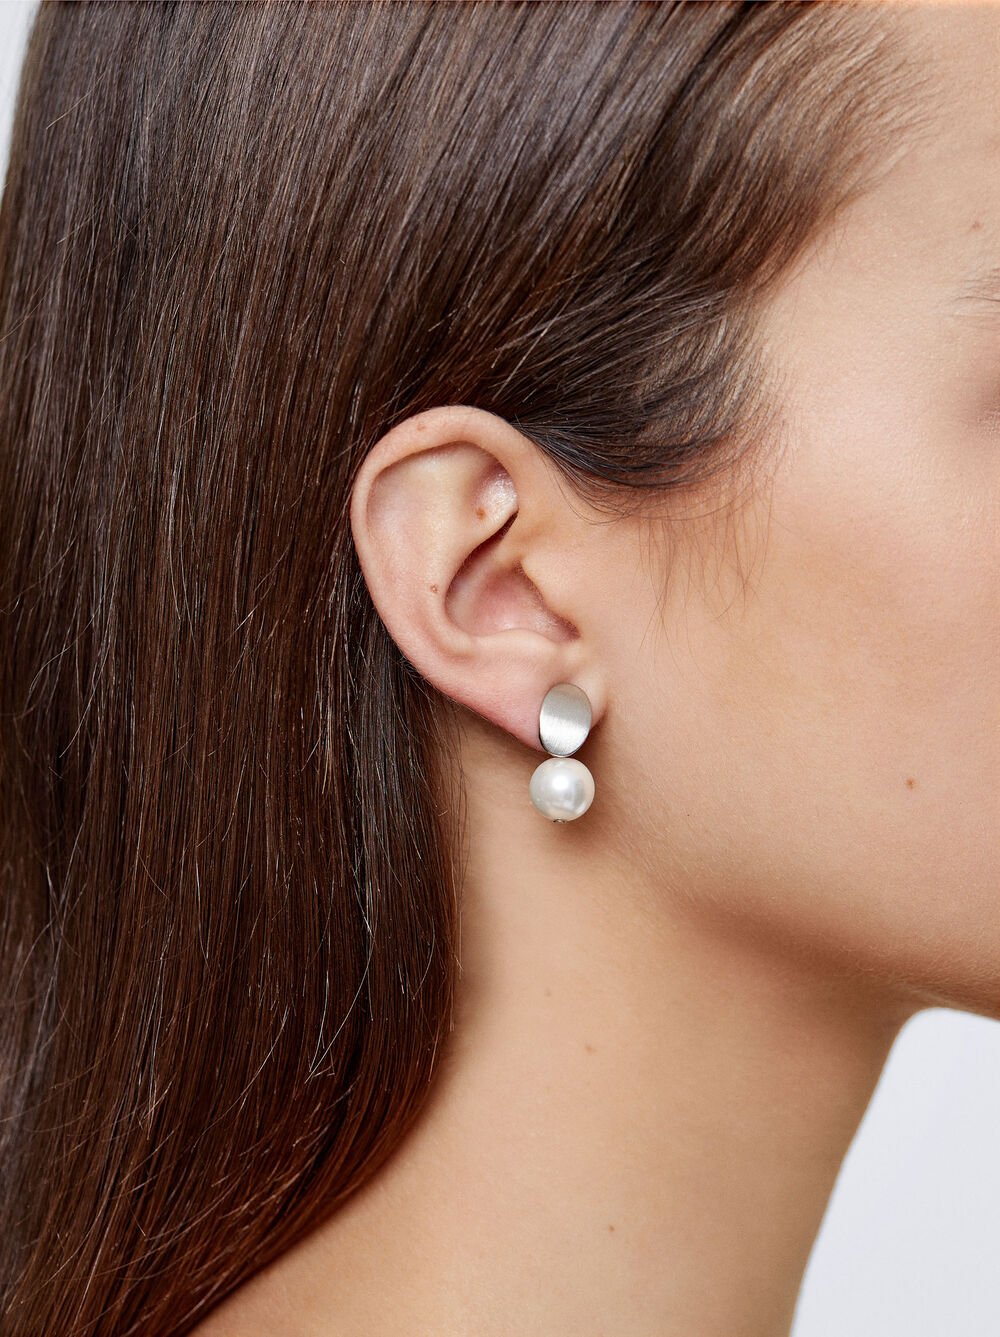 Short Earrings With Rhinestones